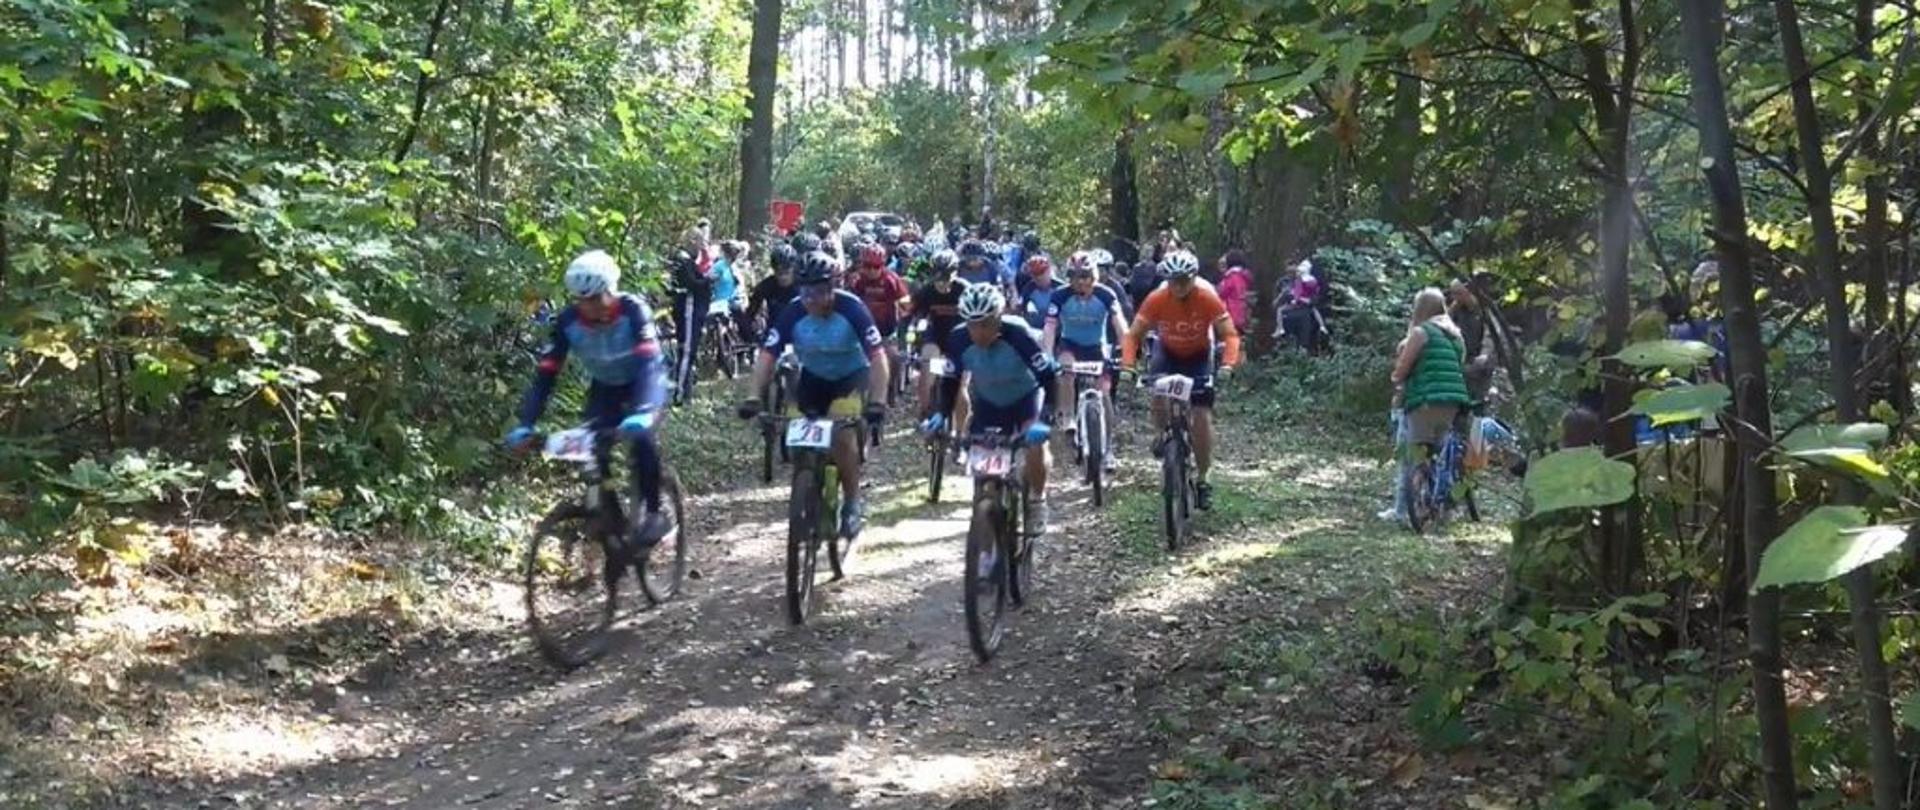 Uczestnicy rajdu w trakcie rywalizacji – kilkudziesięciu uczestników na rowerach, w strojach sportowych. W tle las, w którym odbywają się zawody.